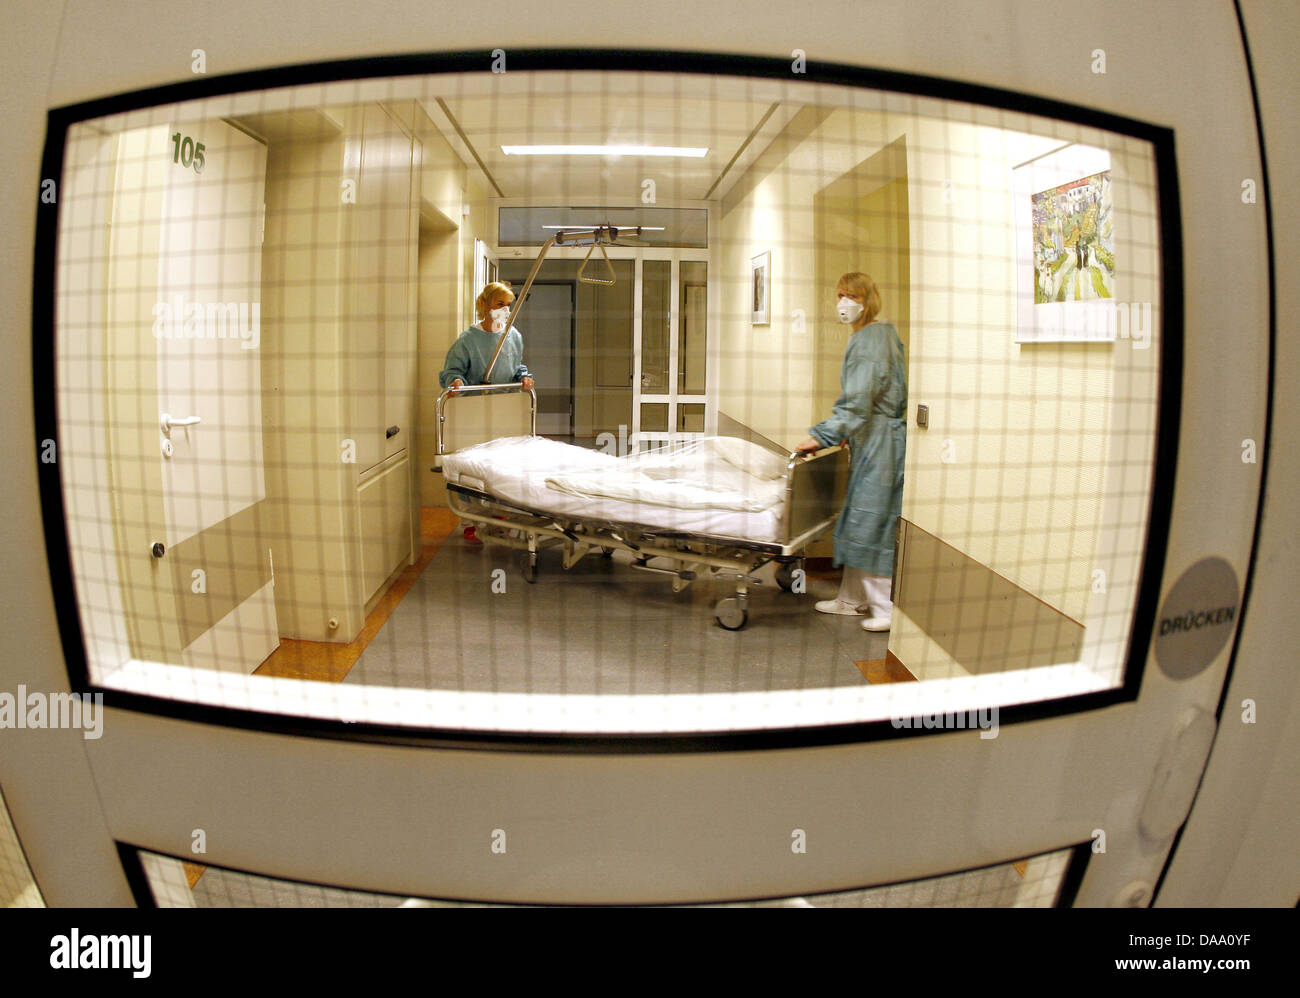 (Dpa Datei) - ein Datei Bild, datiert 30. April 2009, zeigt zwei Krankenschwestern Drücken einer Bahre entlang der Isolierstation im St. Elisabeth-Krankenhaus in Dorsten, Deutschland. Starben zwei Menschen von der Schweinegrippe, auch bekannt als das H1N1-Virus in Niedersachsen mit einem drei Jahre alten Mädchen und ein 51 - Jahre alter Mann, erklärte ein Sprecher des Gesundheitsministeriums des Landes Niedersachsen in Hannover, M Stockfoto